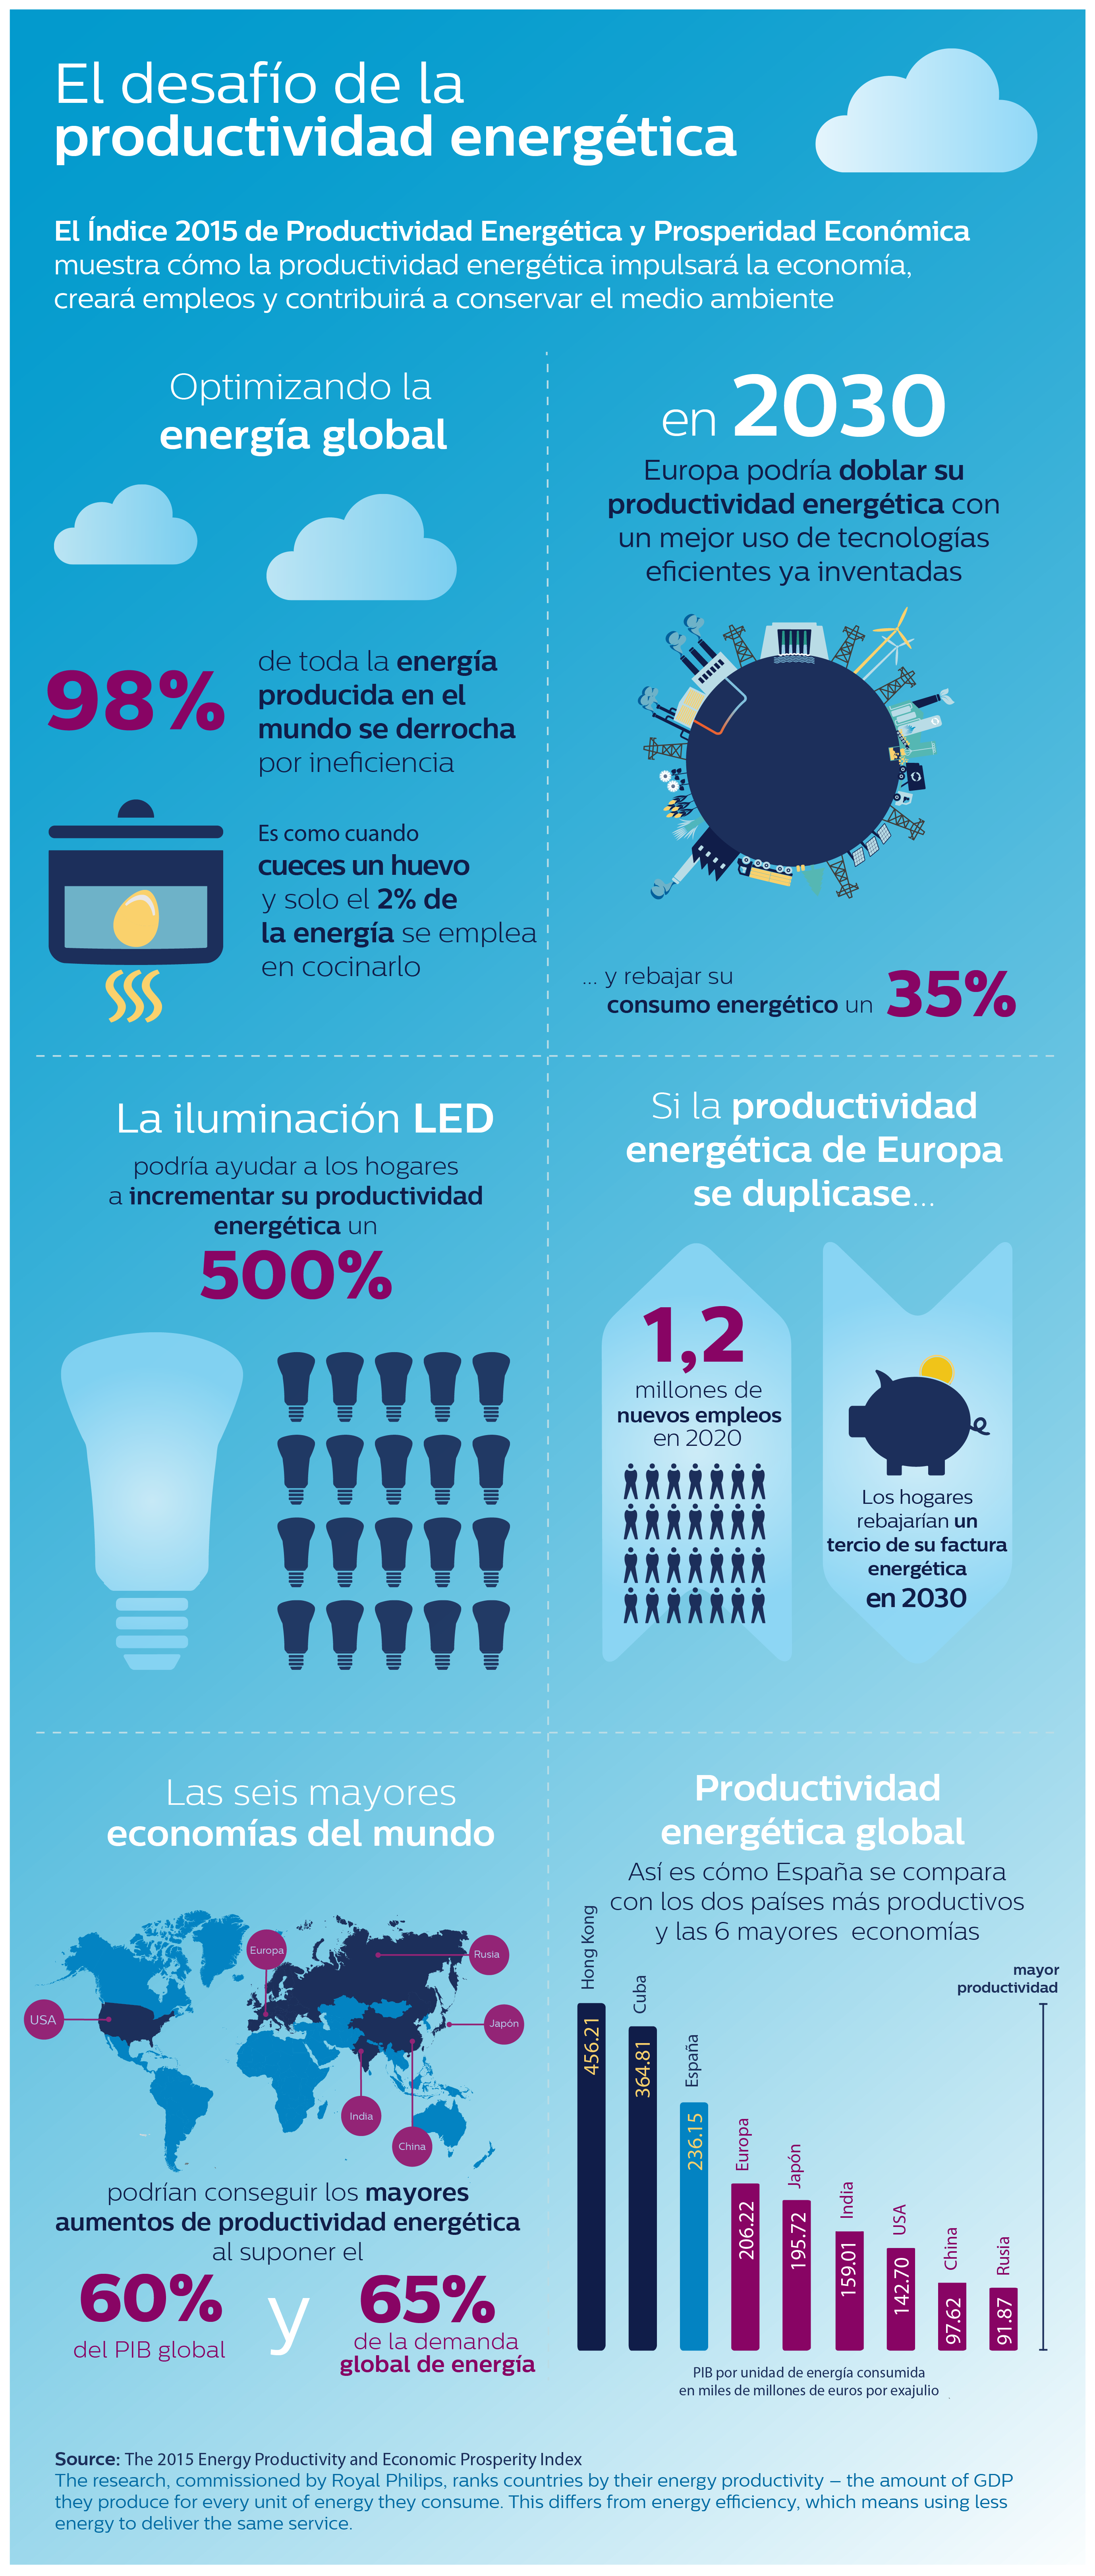 España podría estimular su economía a través de un mejor uso de la tecnología de eficiencia energética